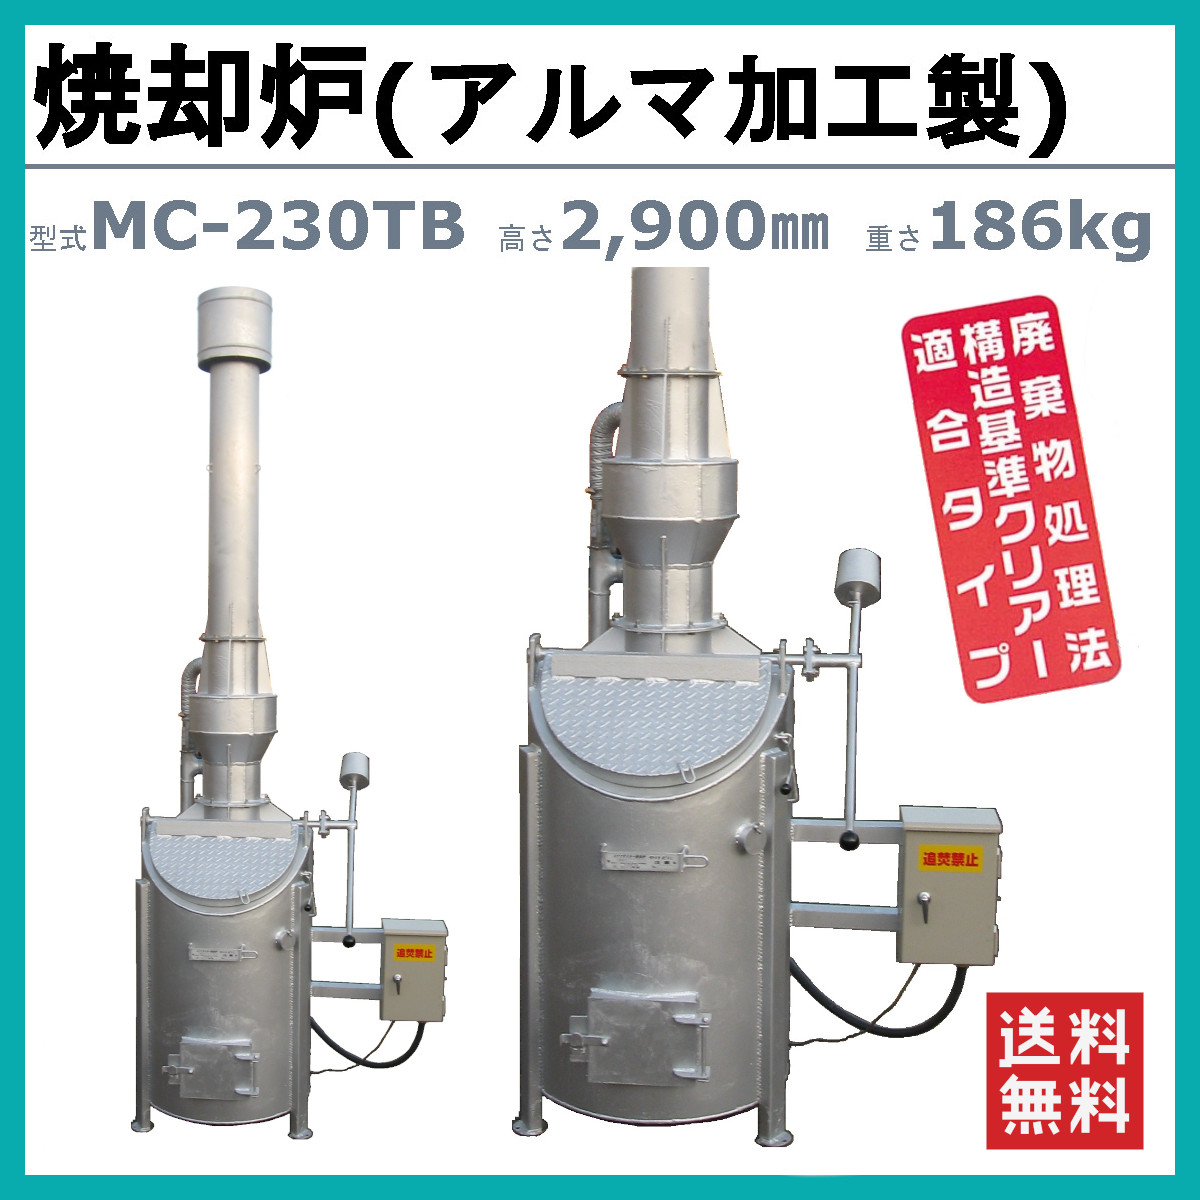 ミツワ東海 焼却炉 MC-230TB MC230TB 業務用 役所への届出不要 容量 